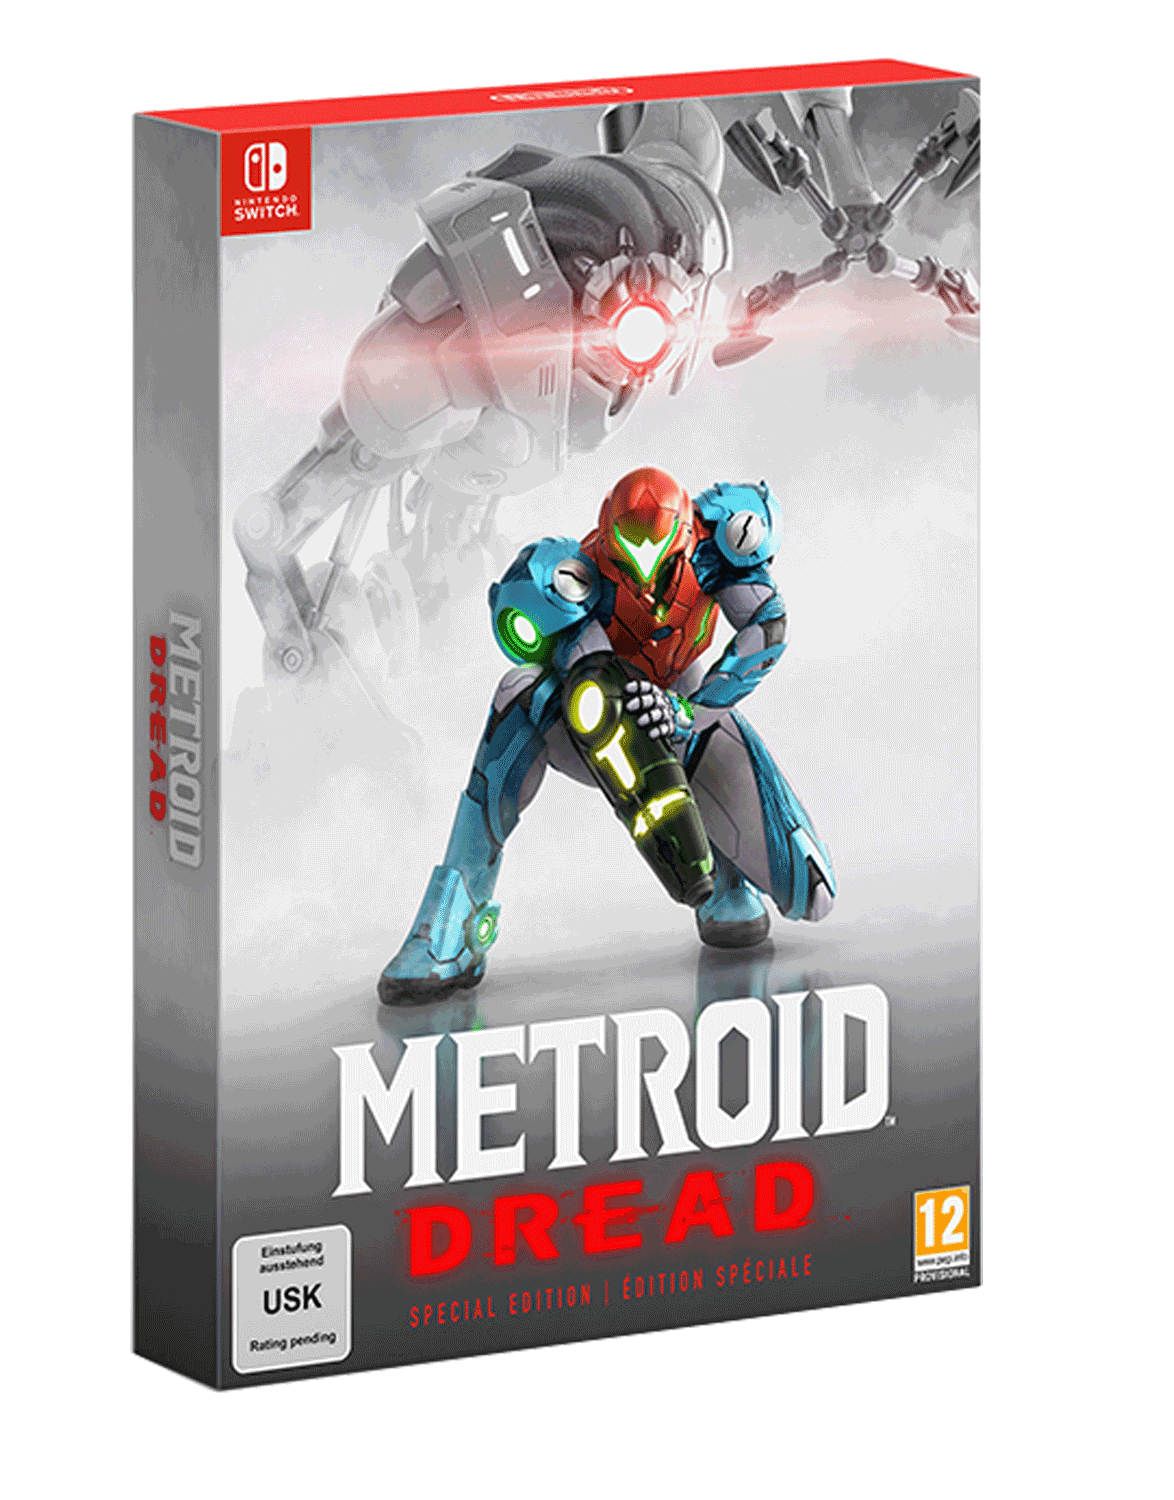 Nintendo switch metroid. Metroid Dread Nintendo Switch. Metroid Dread обложка. Военные игры на Нинтендо свитч. Игра для Switch Metroid Dread Special Edition (русская версия) обложка.